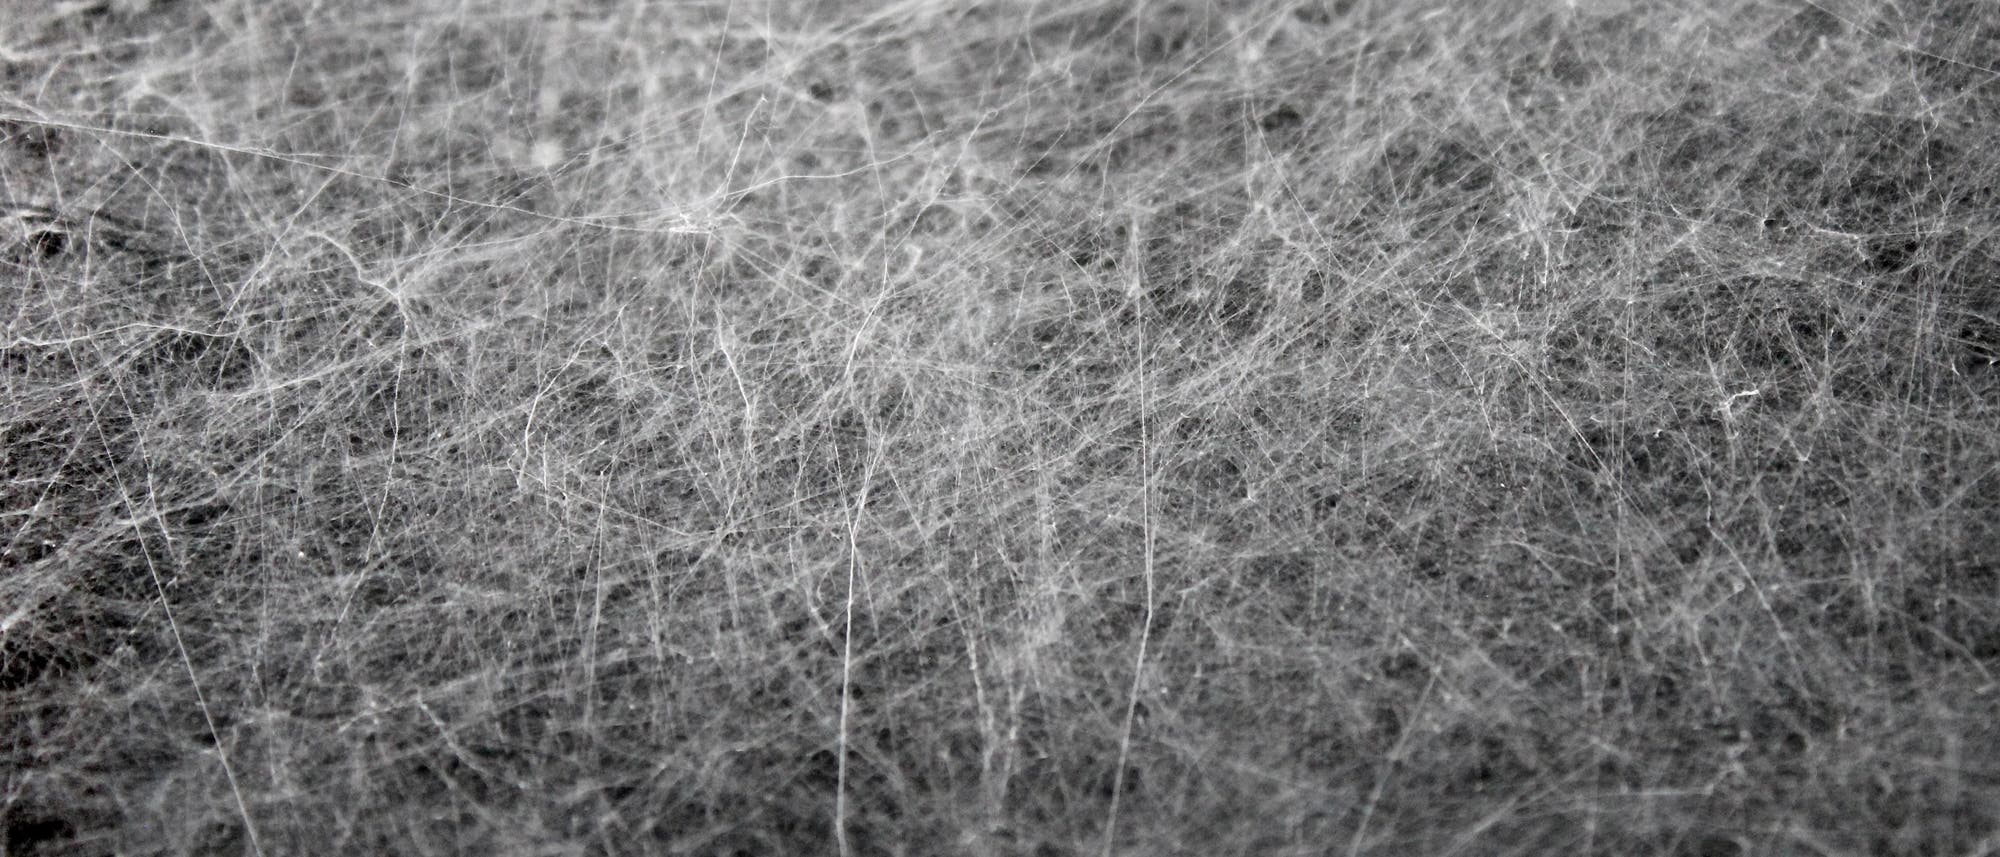 Riesige Spinnennetze hüllen die Landschaft um Launceston ein. (Symboldbild)